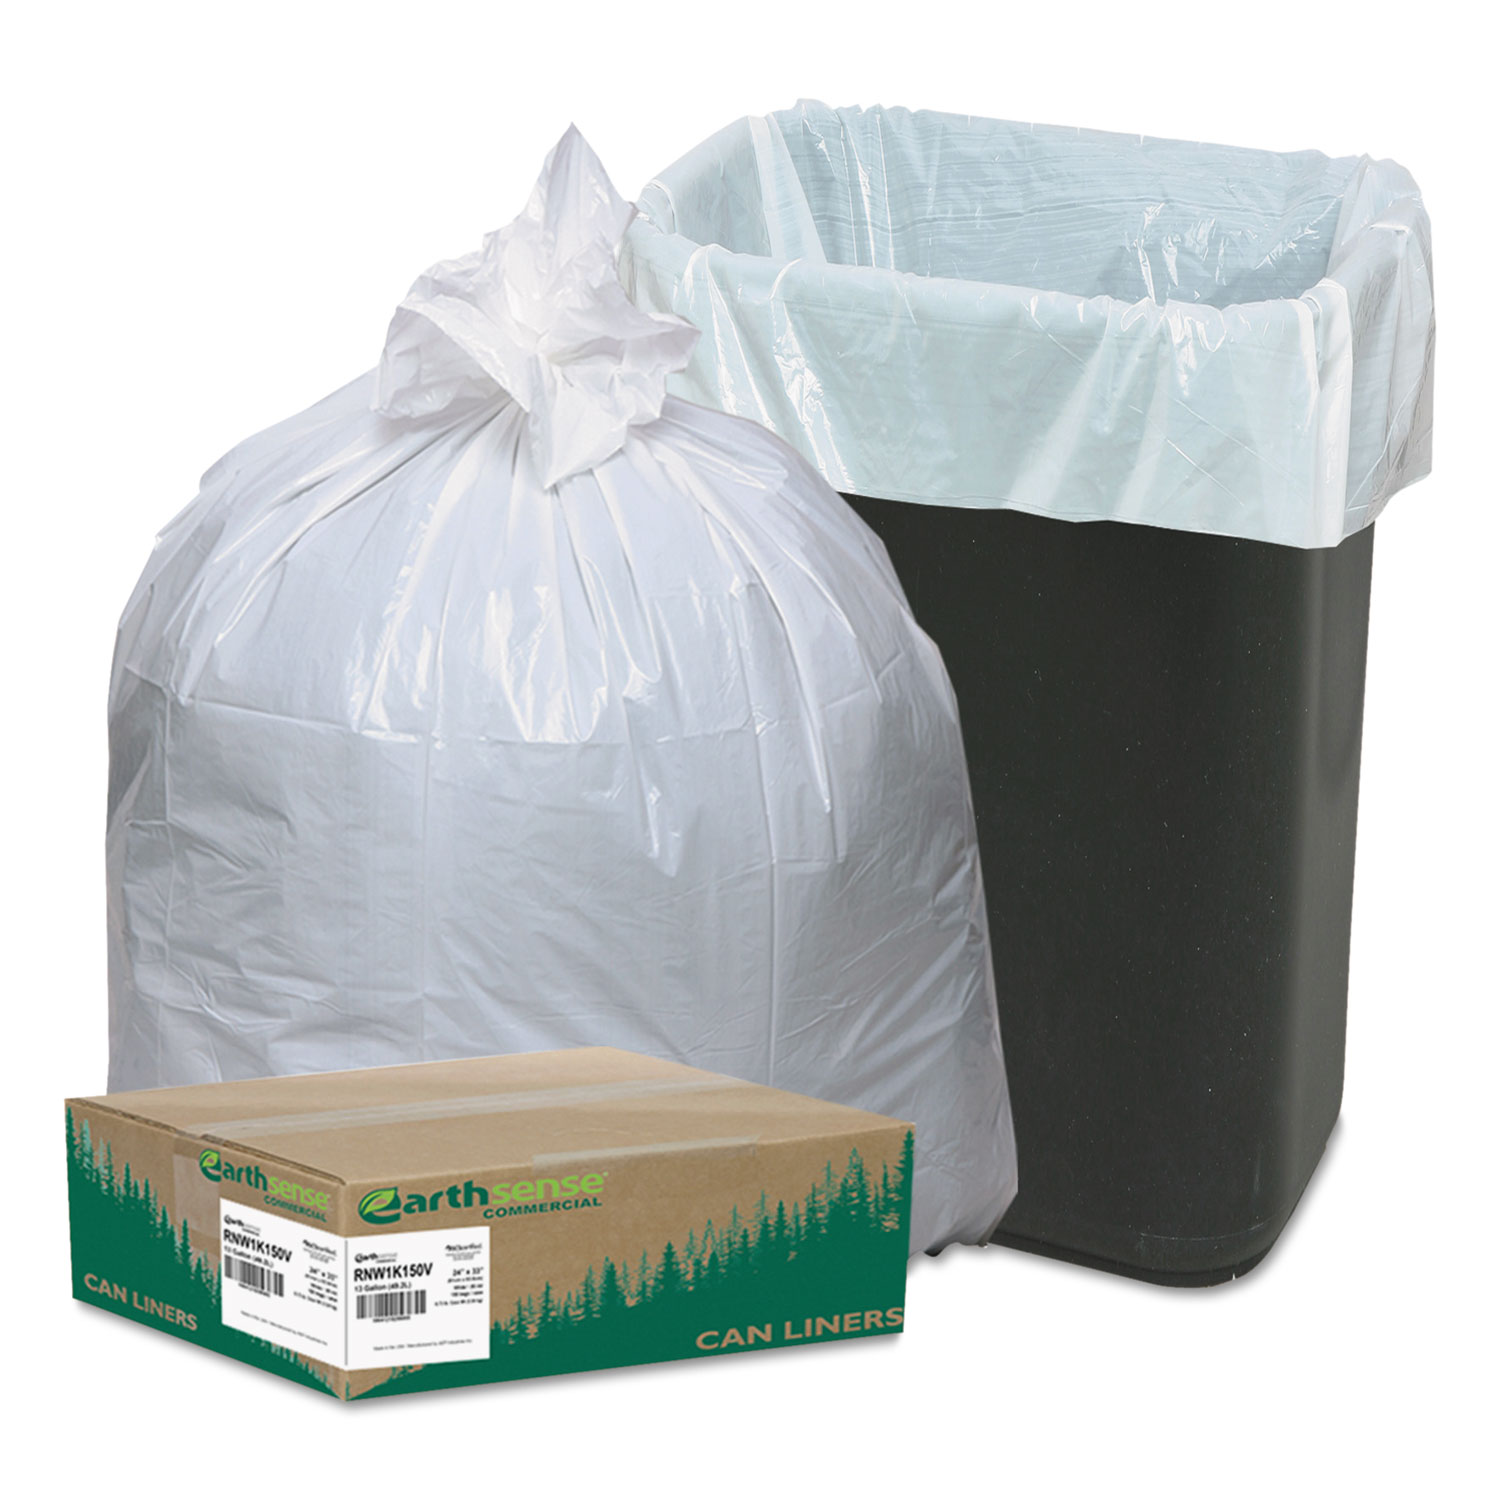  Earthsense Commercial RNW1K150V Linear-Low-Density Recycled Tall Kitchen Bags, 13 gal, 0.85 mil, 24 x 33, White, 150/Box (WBIRNW1K150V) 